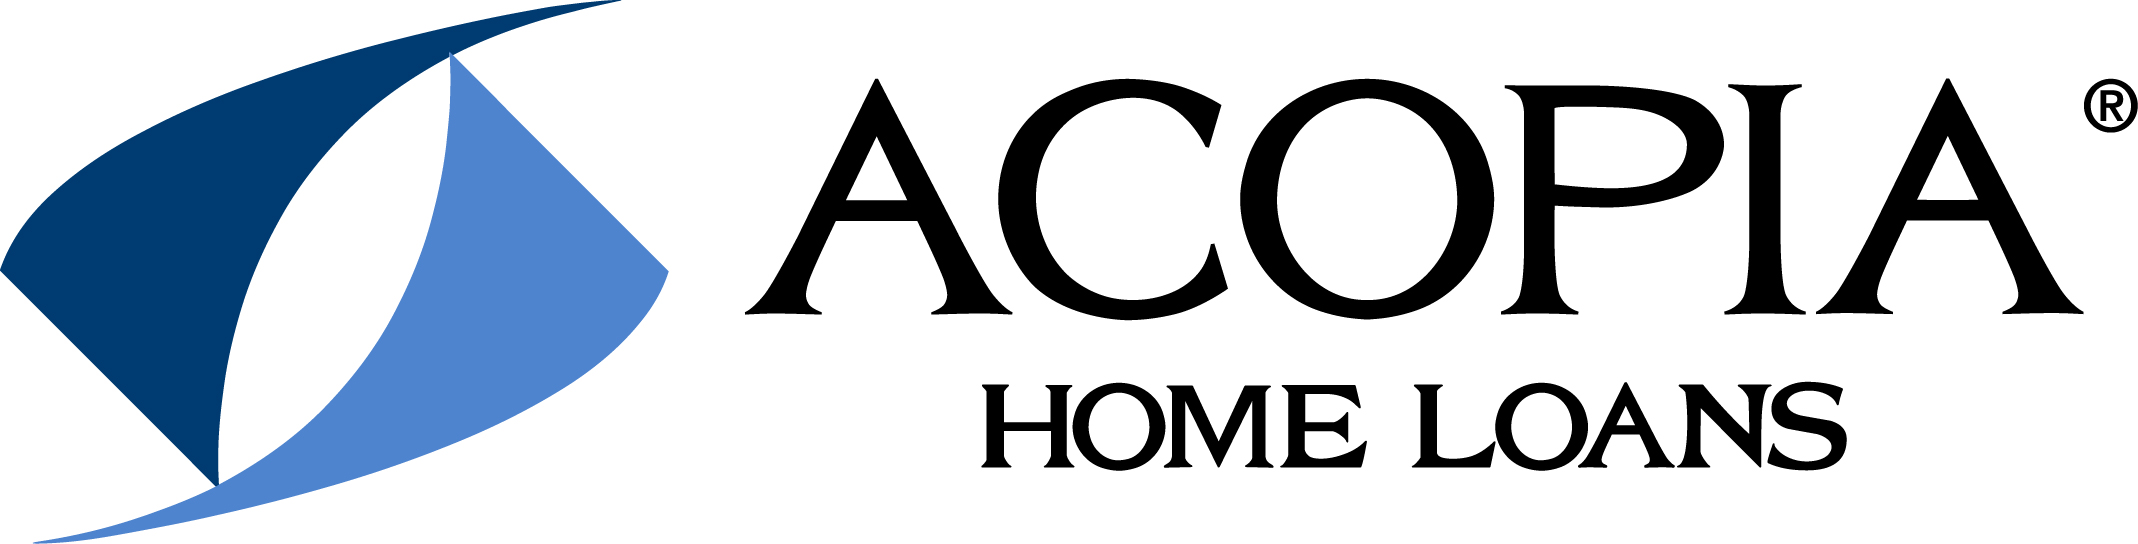 Acopia Home Loans, Hendersonville TN